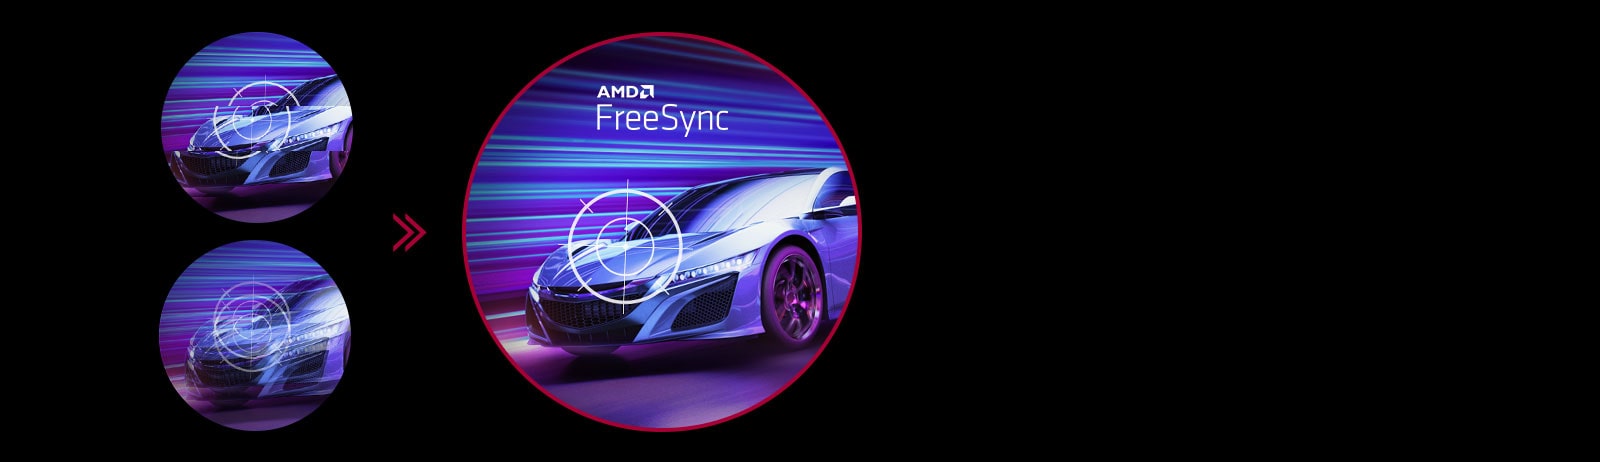 Zahvaljujući tehnologiji AMD FreeSync™, igrači mogu da dožive besprekorne, tečne pokrete tokom brzih igara visoke rezolucije. Praktično smanjuje kočenje i zamrzavanje ekrana.